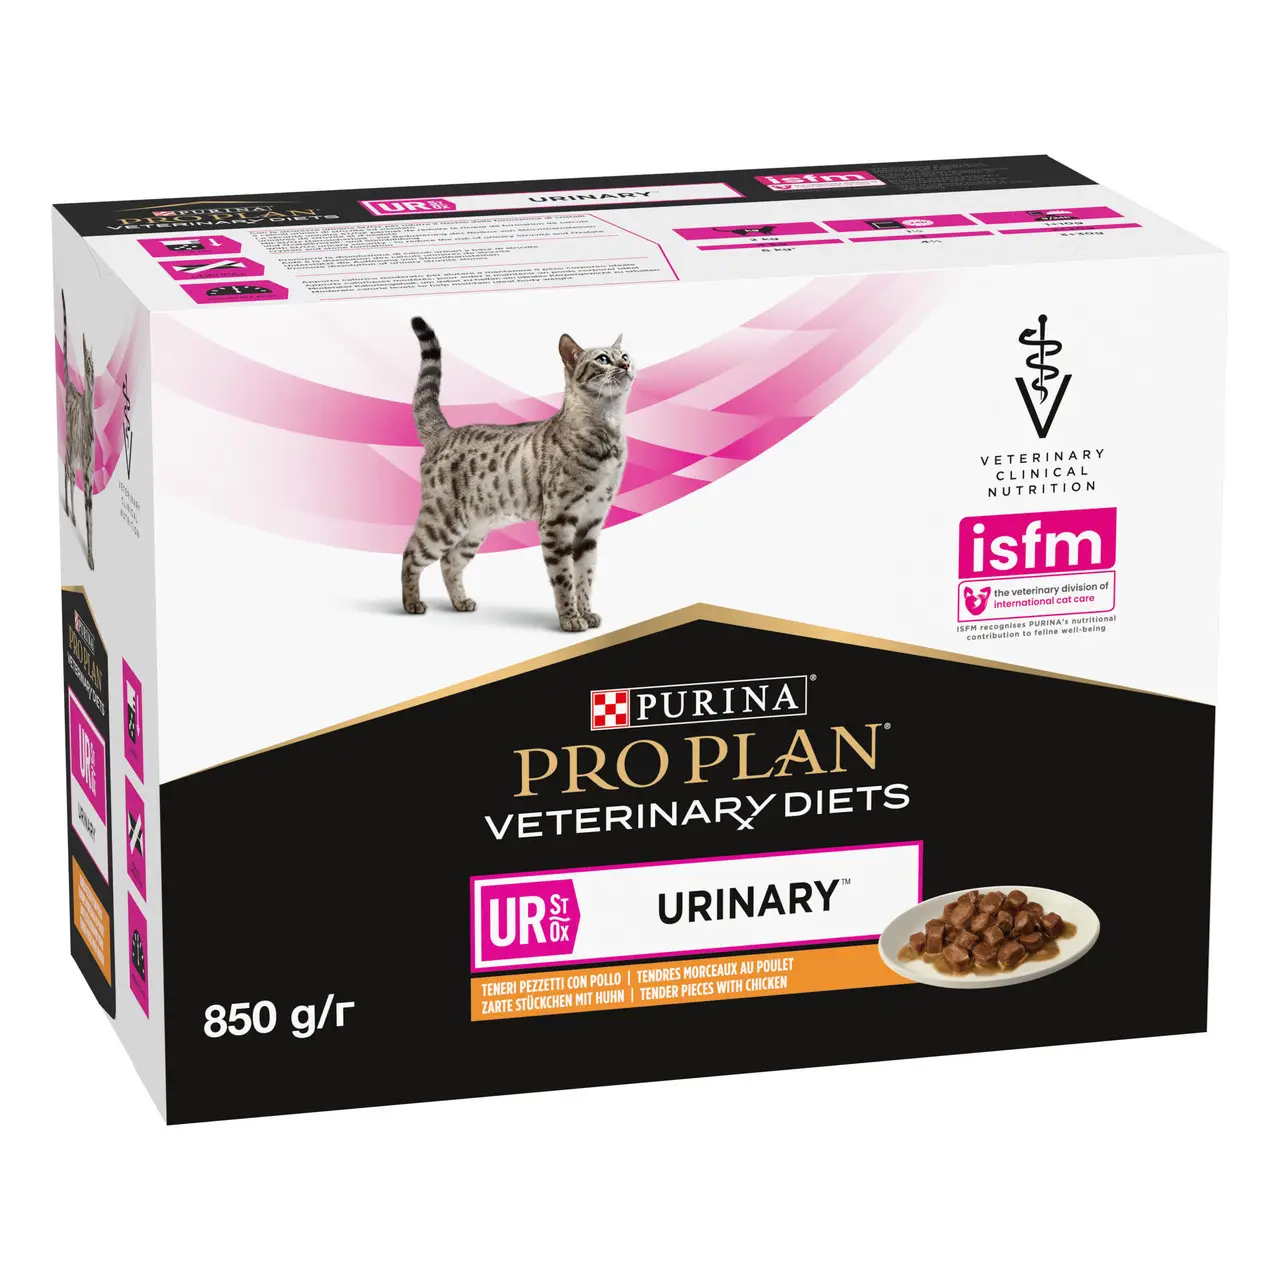 Purina Pro Plan Veterinary Diets UR лікувальний корм для котів c сечокам'яною хворобою 85г*10шт (курка)1